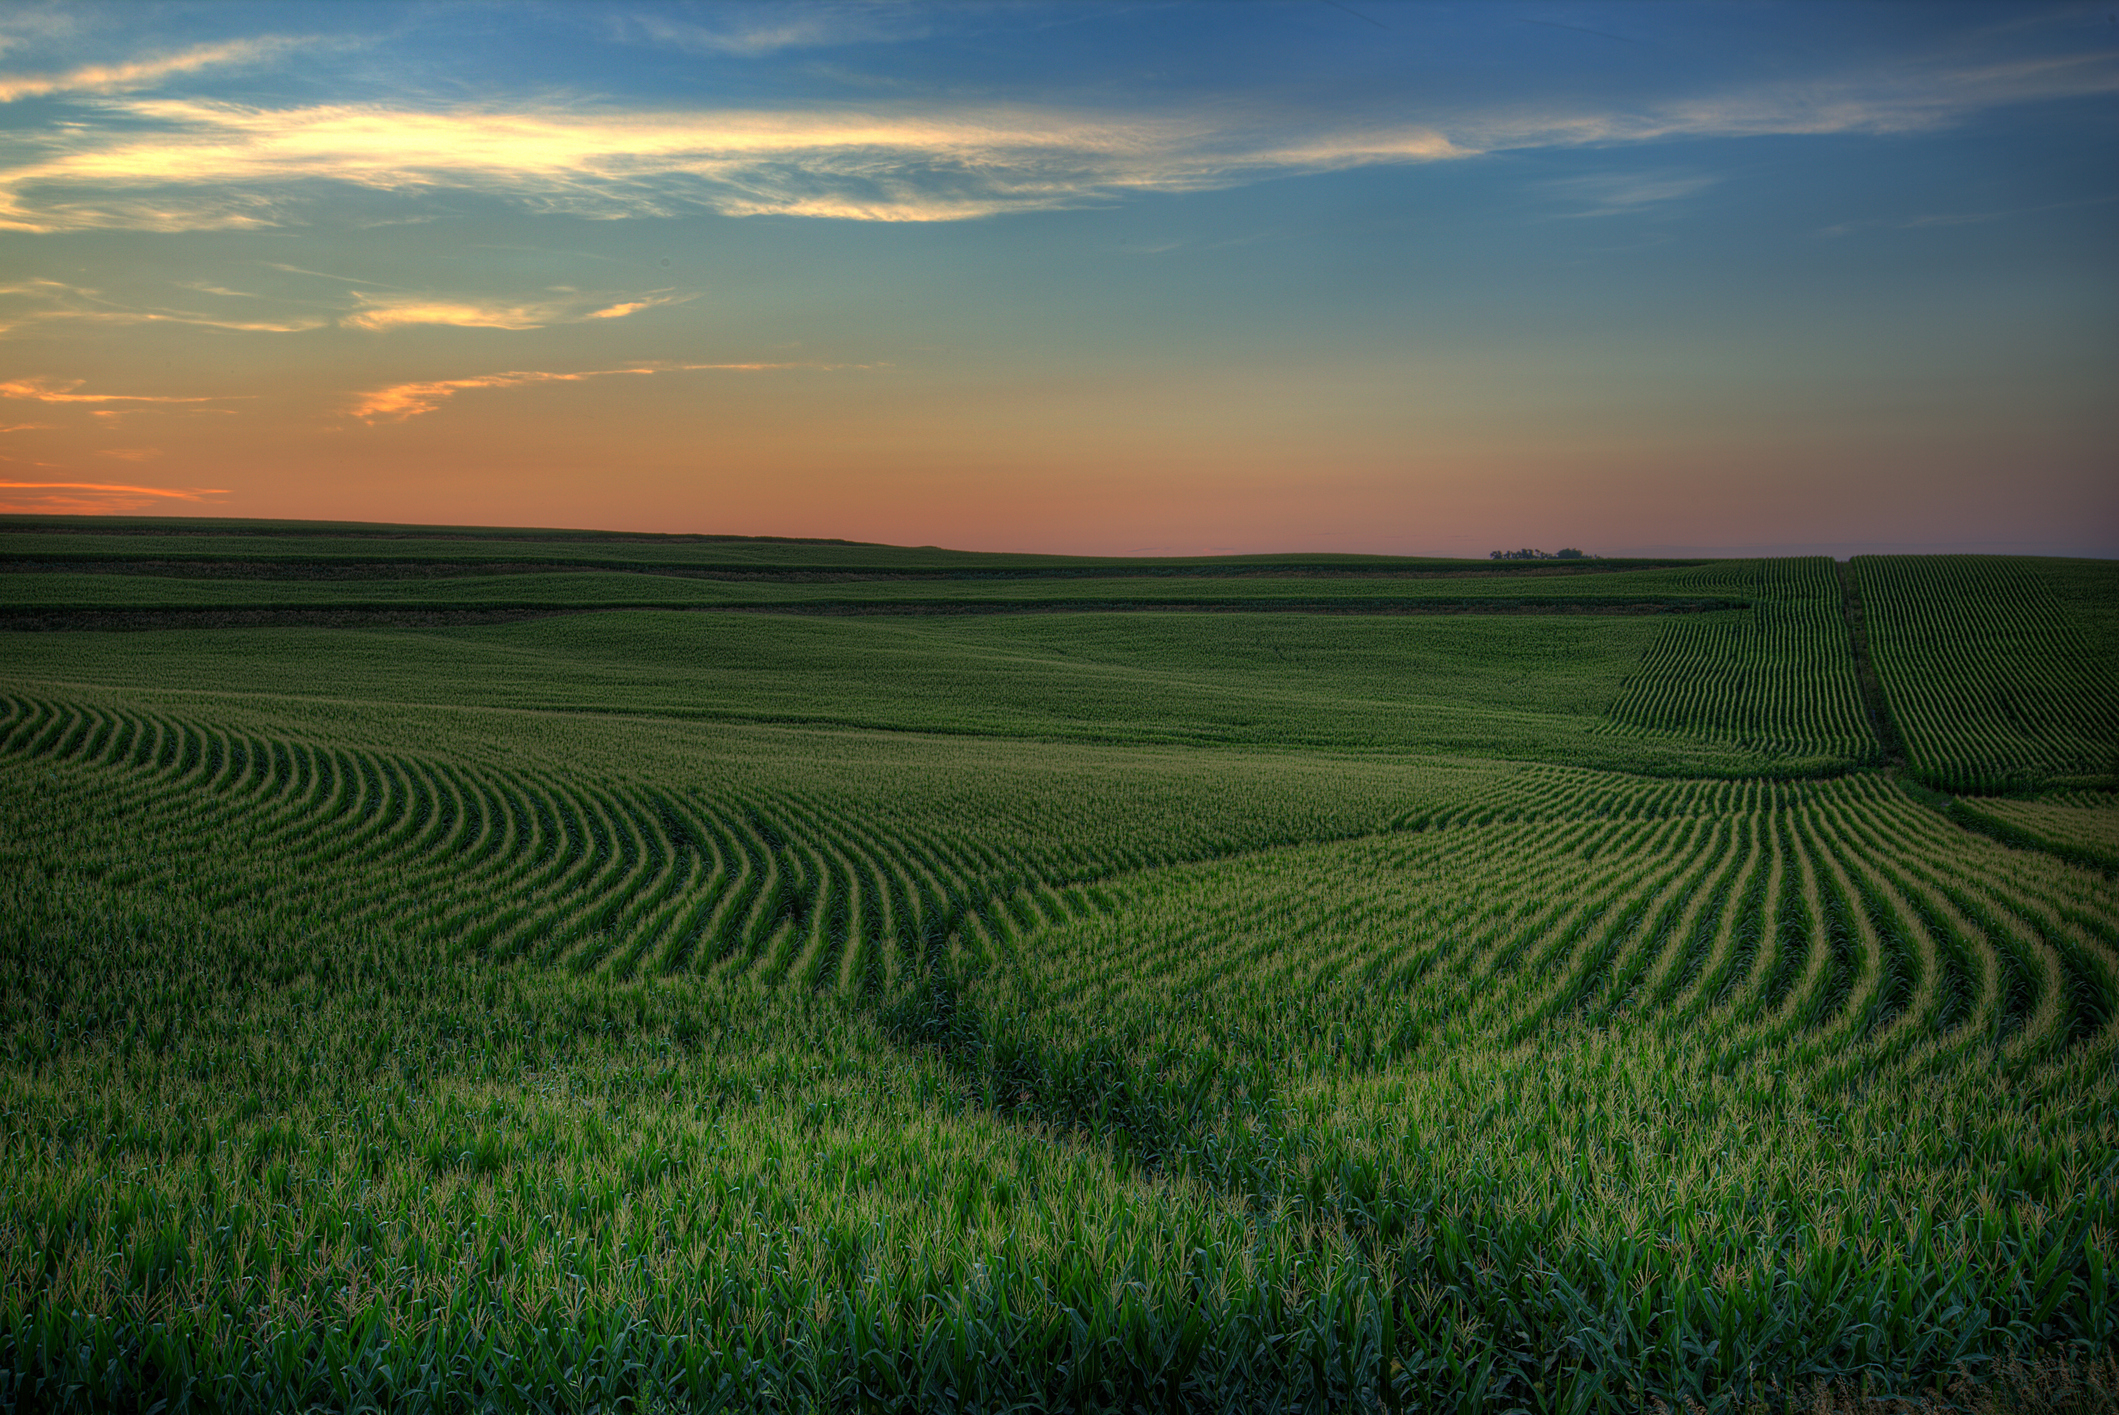 Fields of crop against a dusk backdrop in Iowa